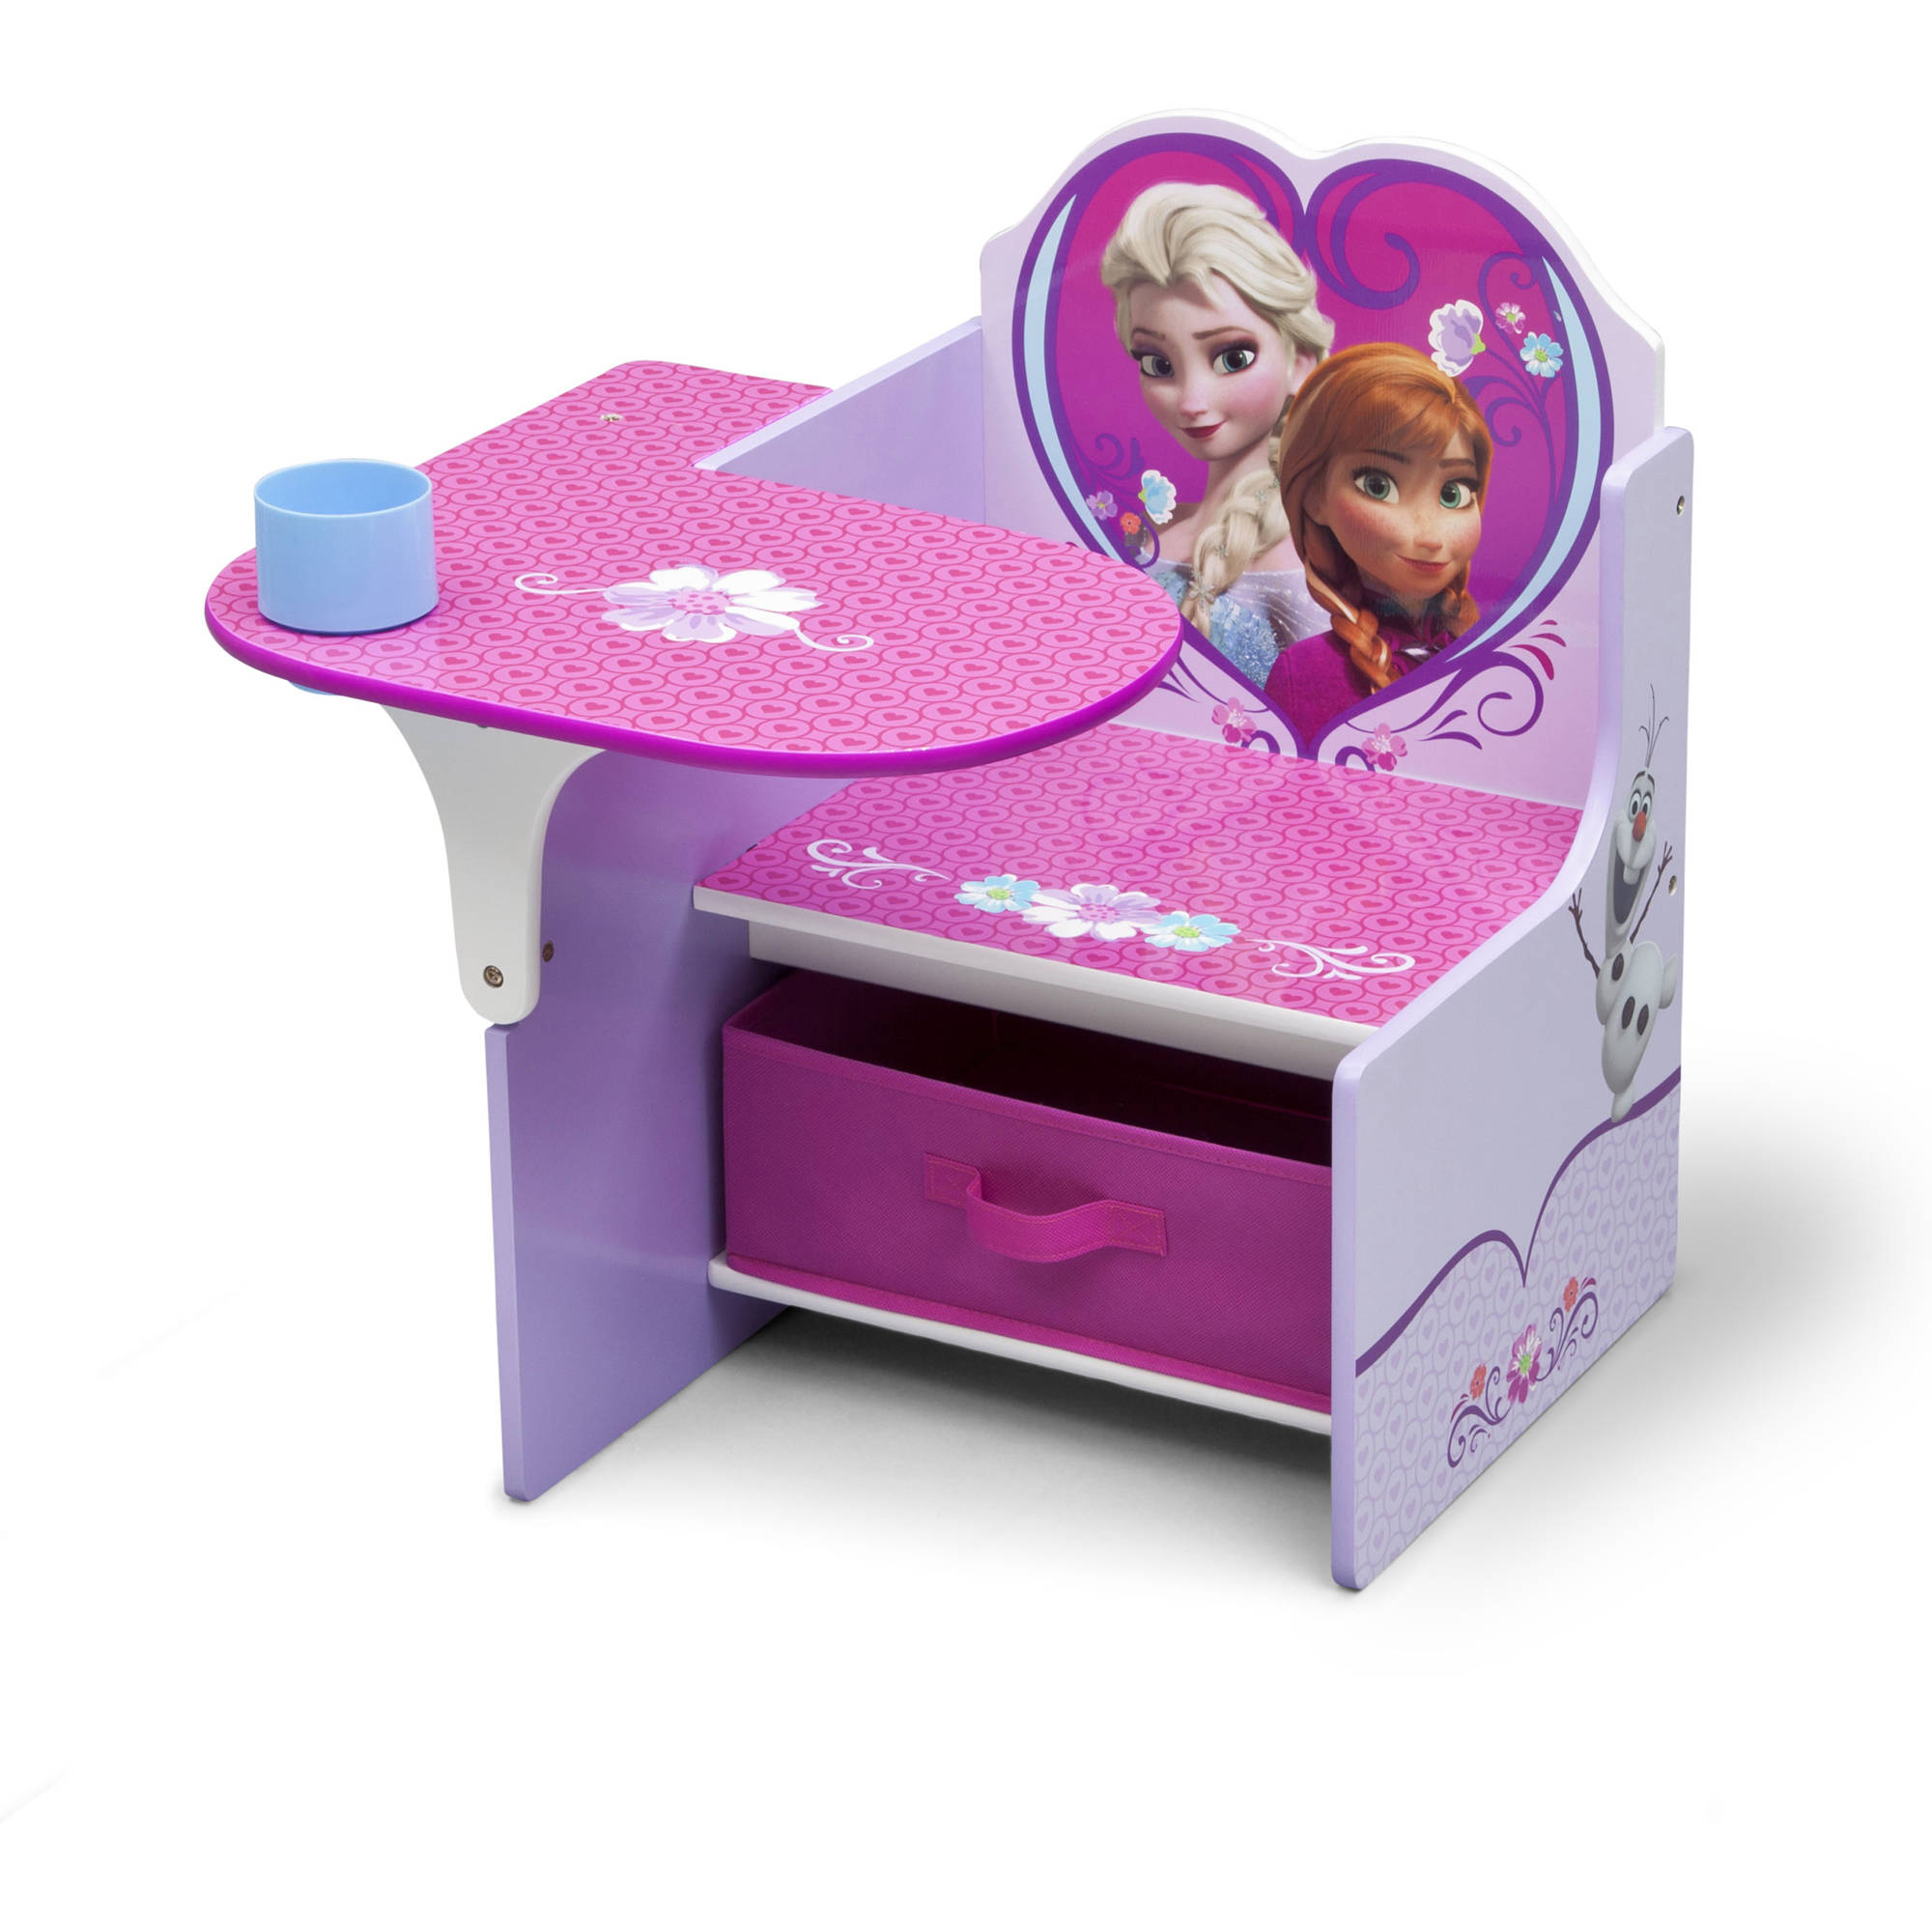 Disney Frozen Chair Desk With Storage Bin Delta Children intended for size 2000 X 2000